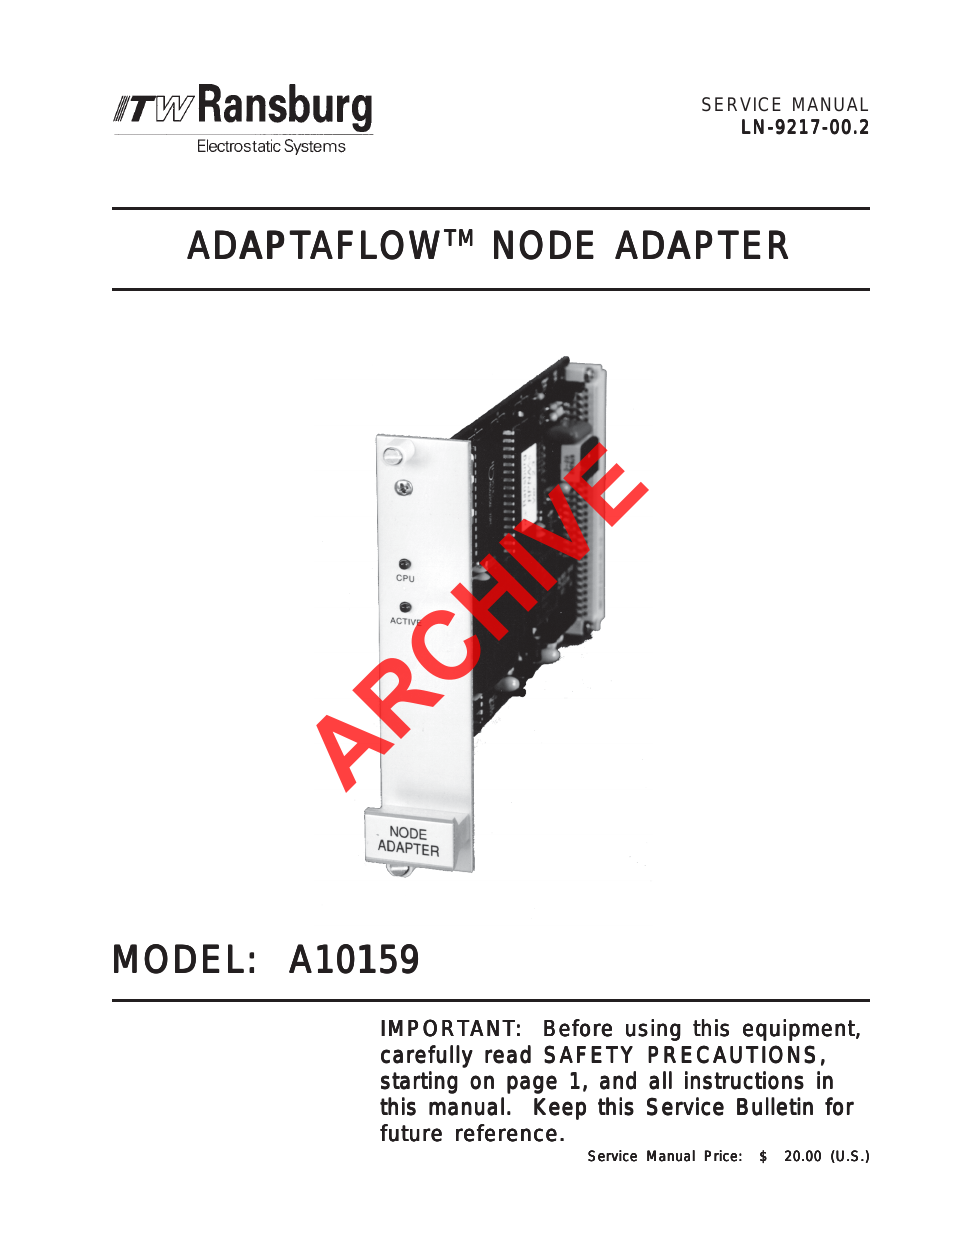 AdaptaFlow Node Adapter A10159